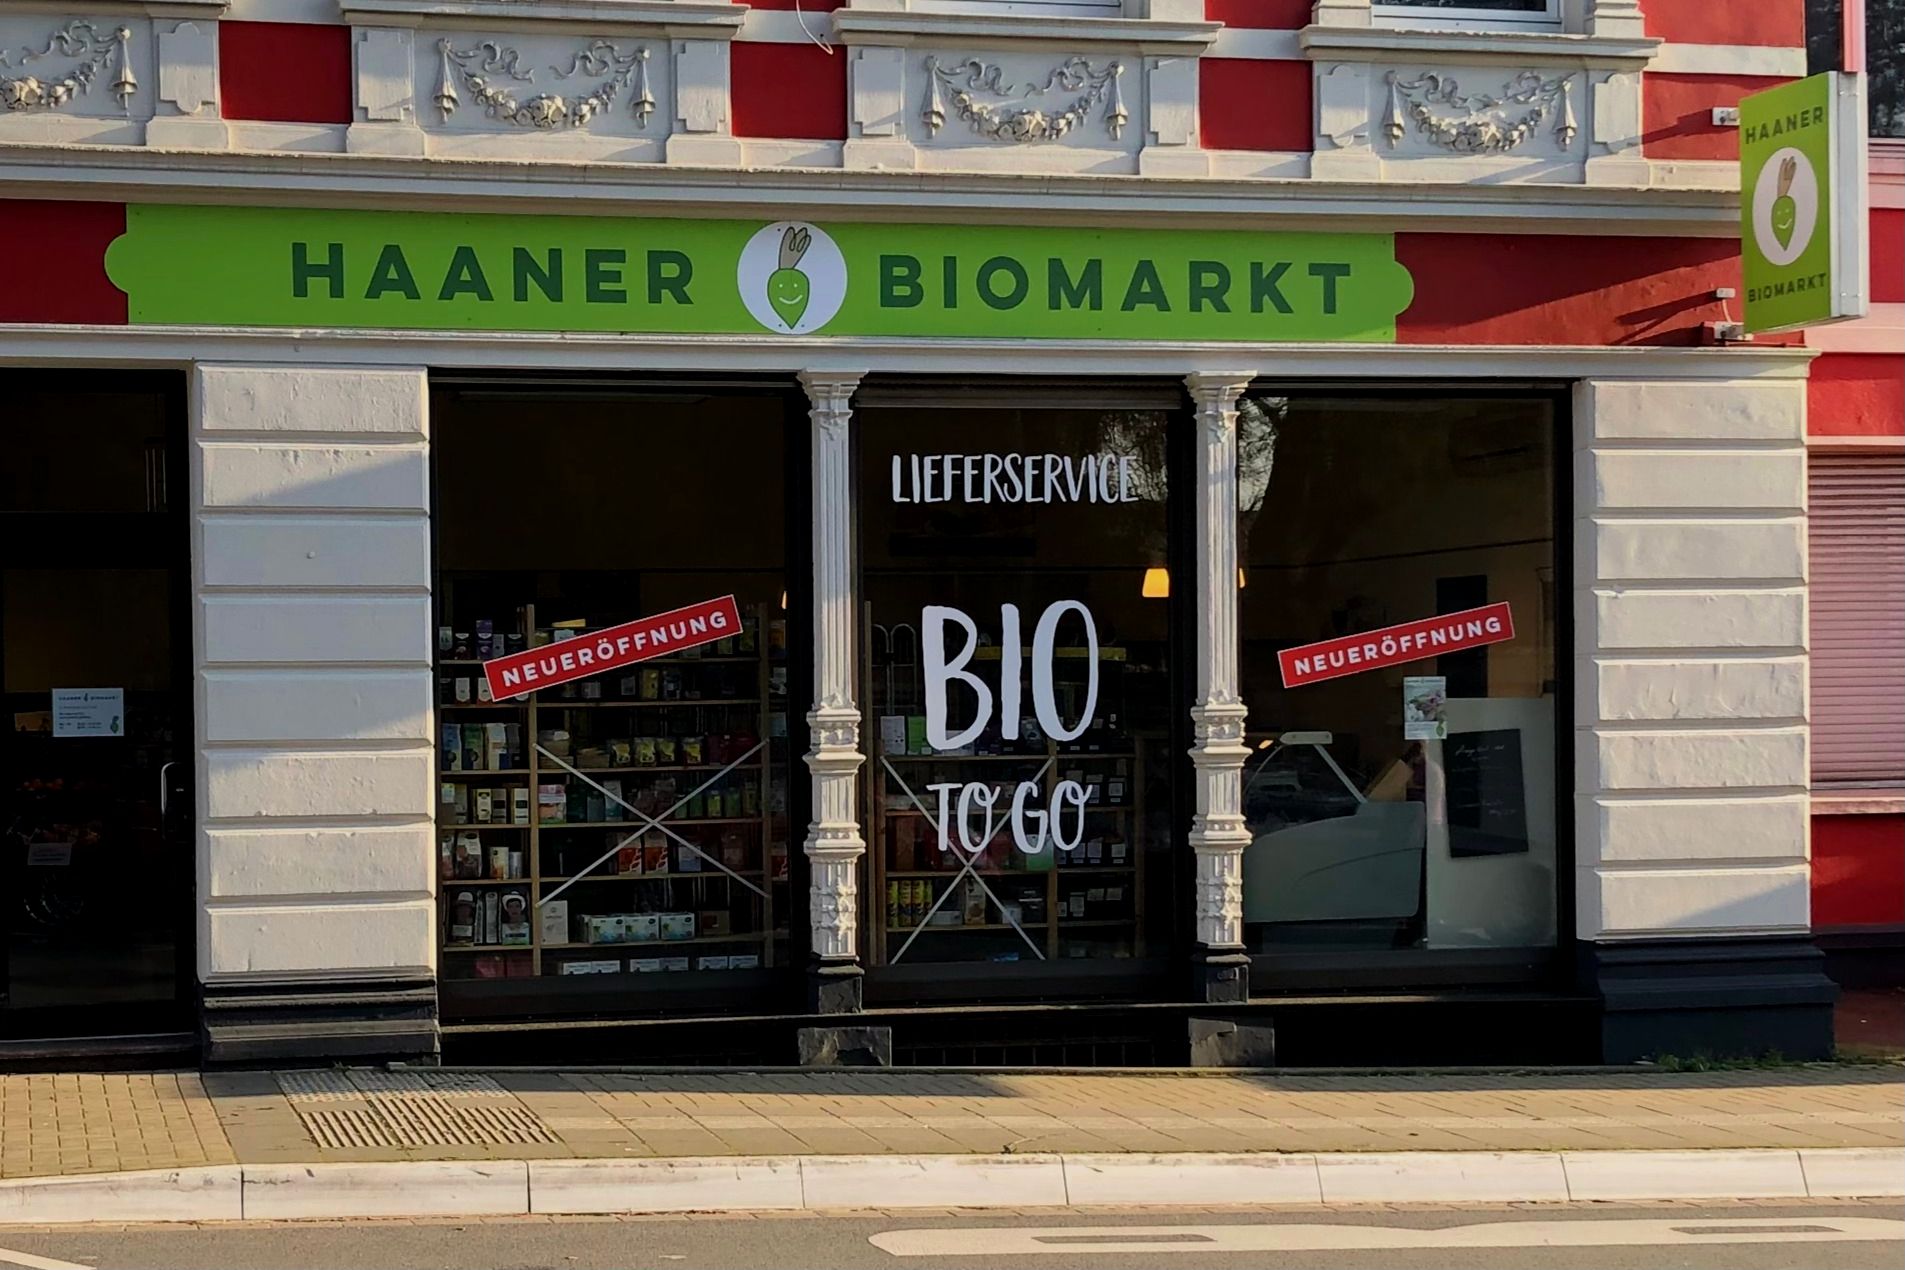 Haaner Biomarkt